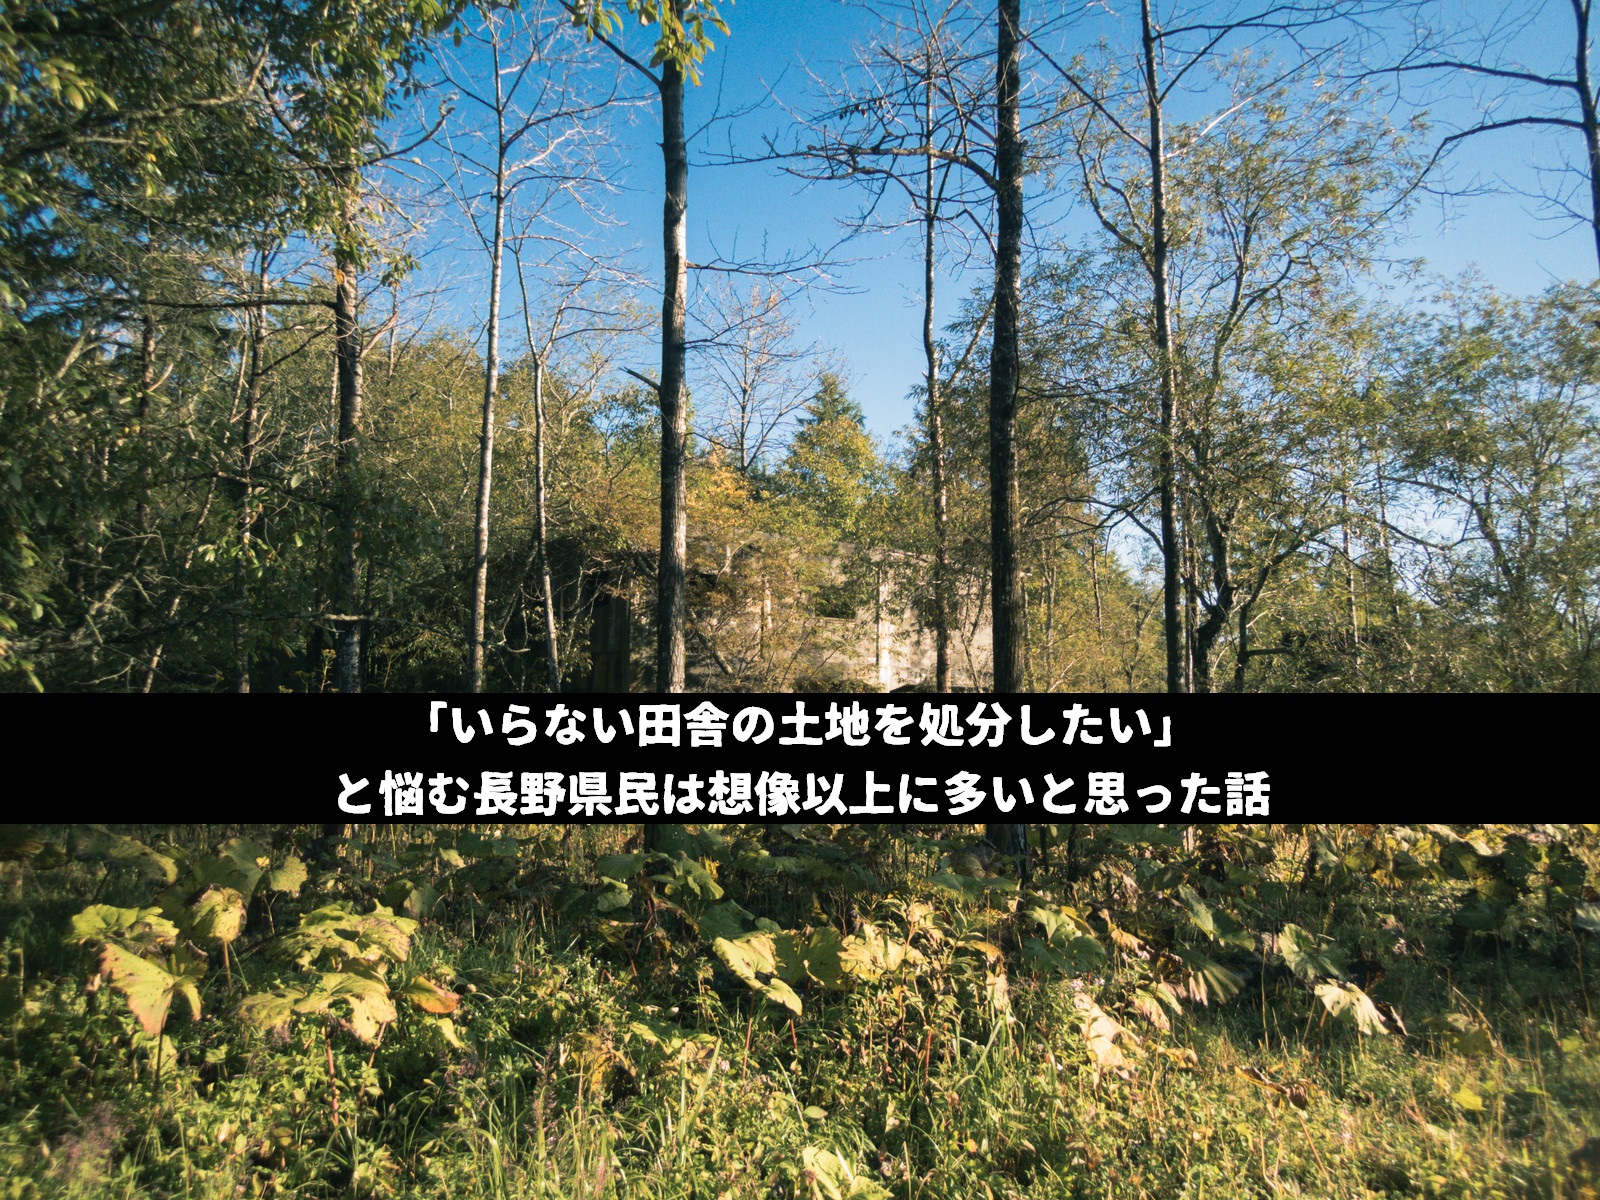 「いらない田舎の土地を処分したい」と悩む長野県民は想像以上に多いと思った話